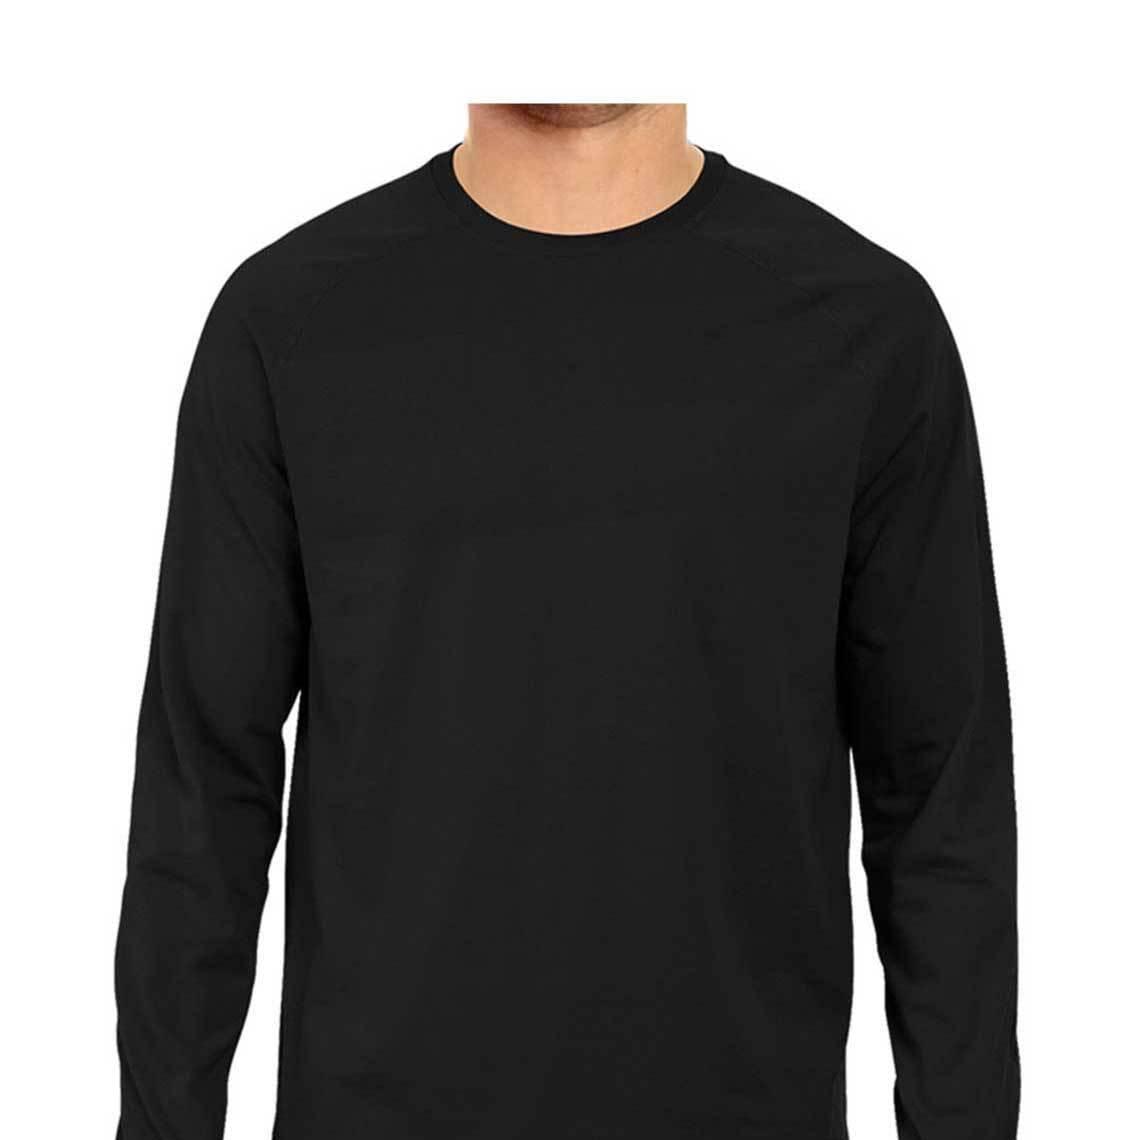 Dealsplant Full Sleeve Round Neck Plain T-Shirt for Men-Clothing-dealsplant